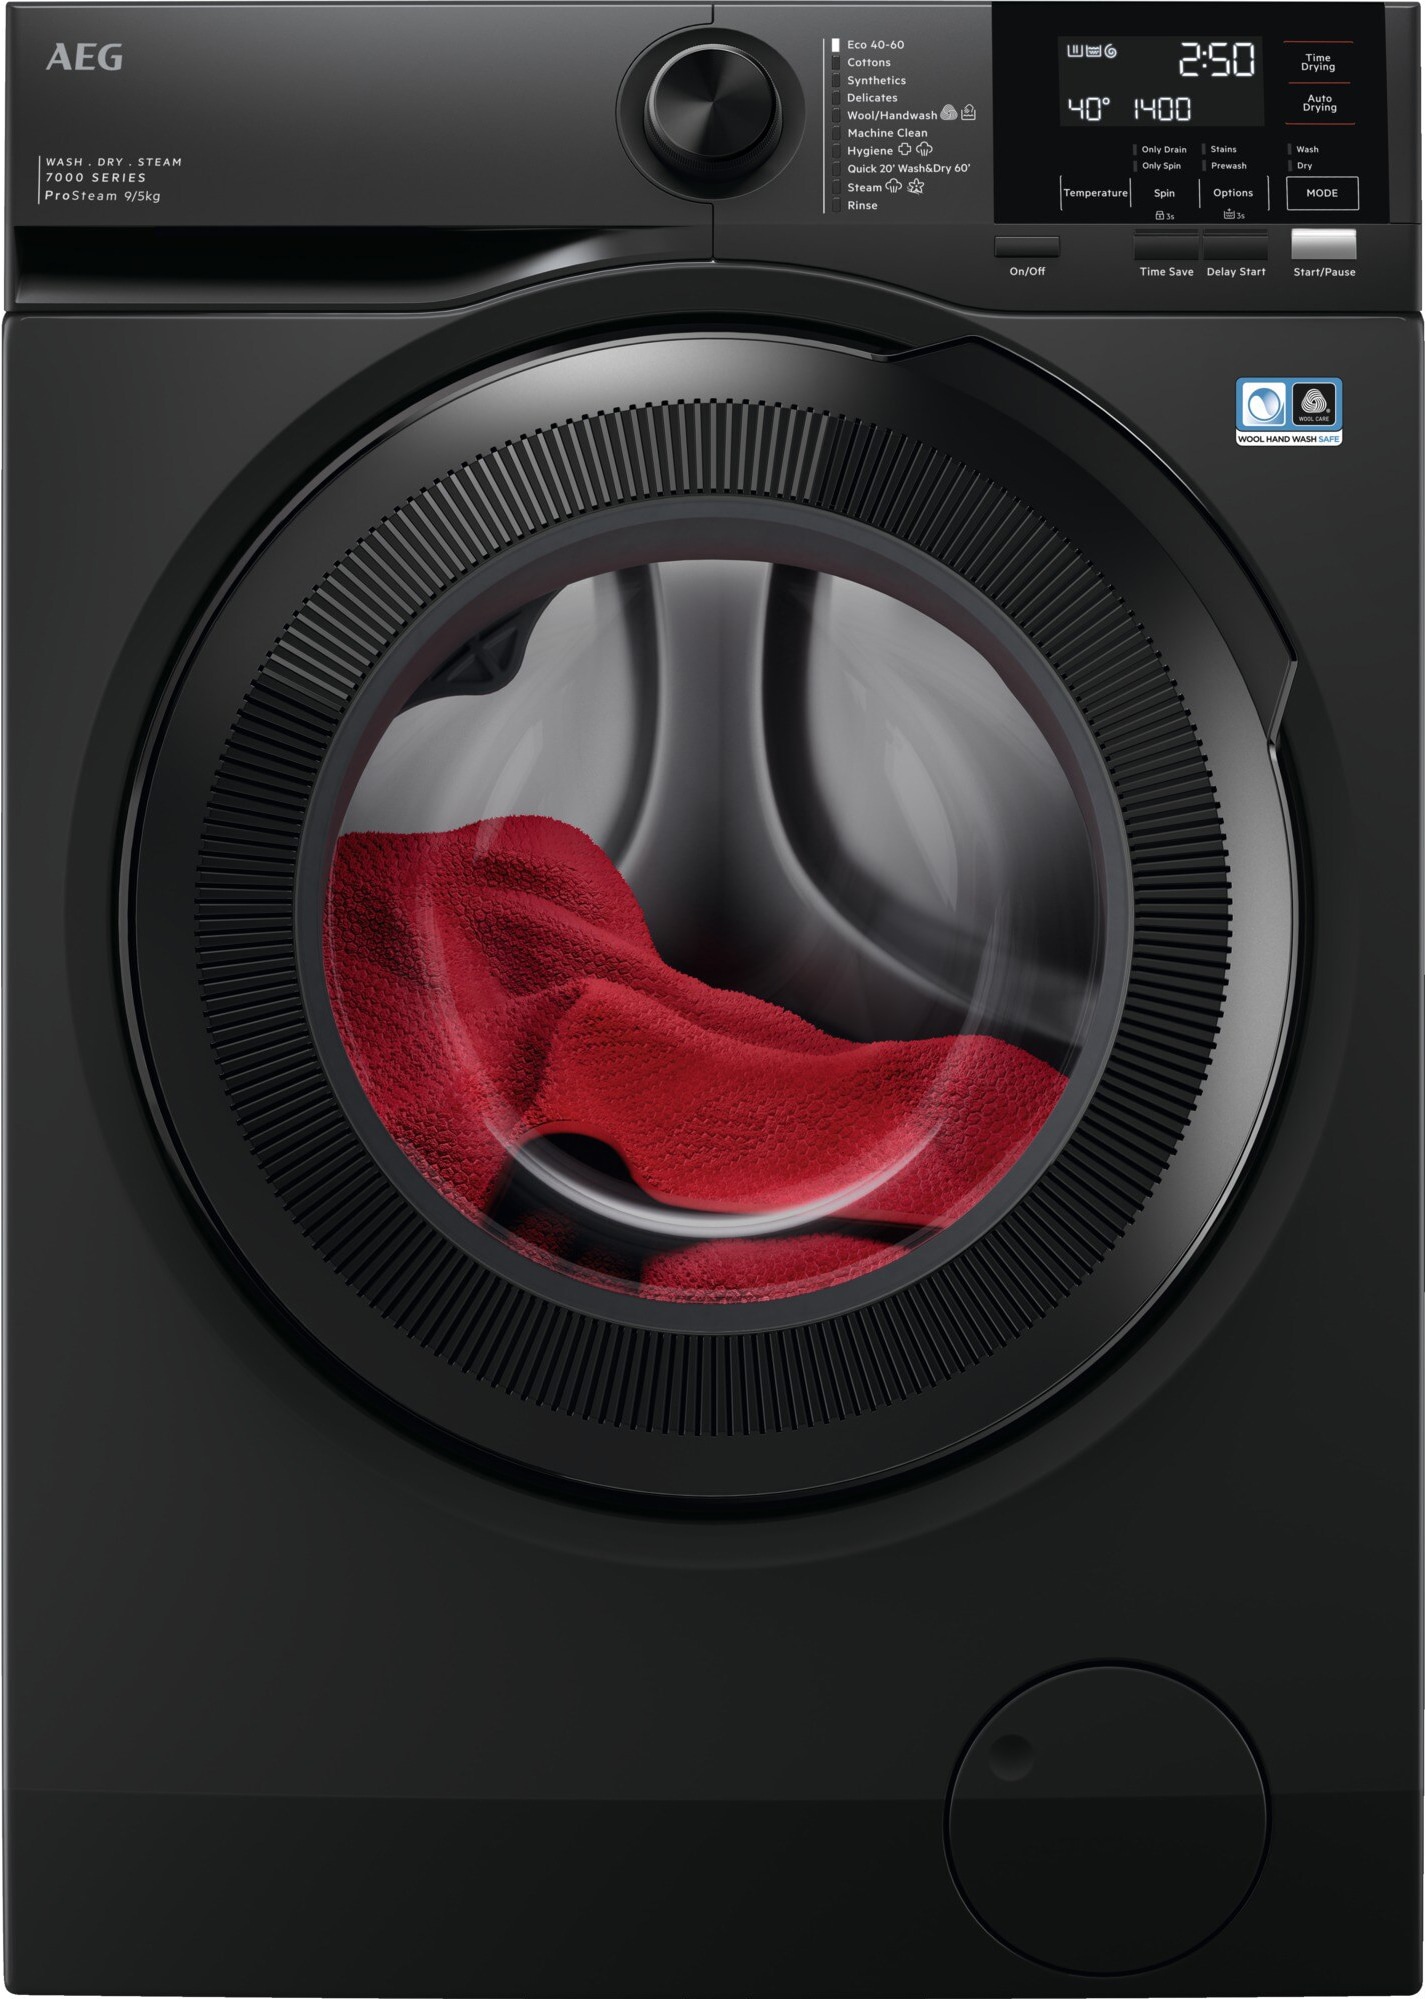 #1 på vores liste over vaskemaskine med tørretumblere er Vaskemaskine med tørretumbler